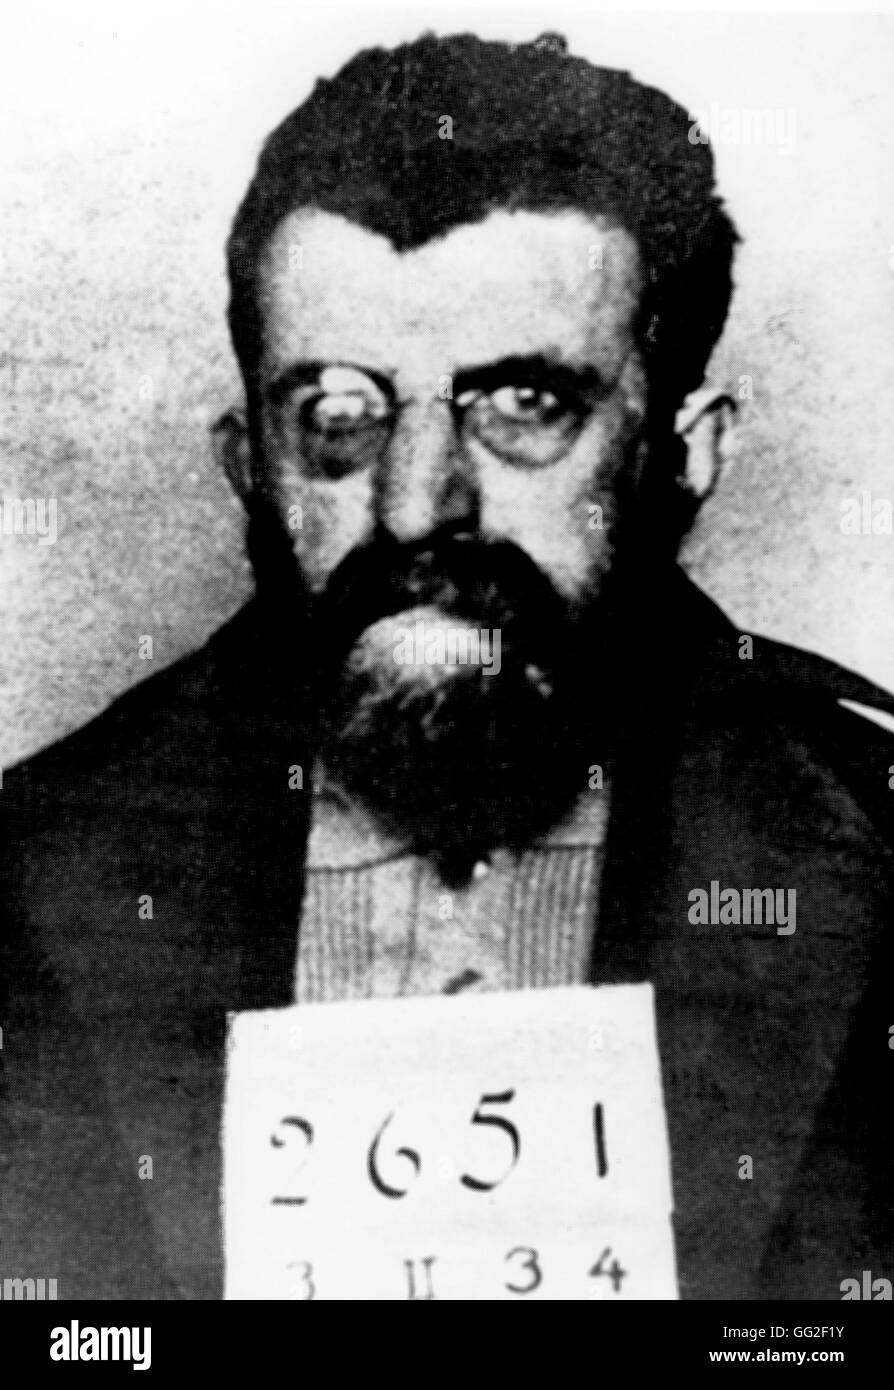 Foto di polizia di anti-fascisti scrittore Erich Mühsam durante la sua prigionia a Orianemburg camp, pochi mesi prima del suo assassinio, la notte dei lunghi coltelli, Giugno 30, 1934 xx secolo Germania Parigi - BIDC Foto Stock